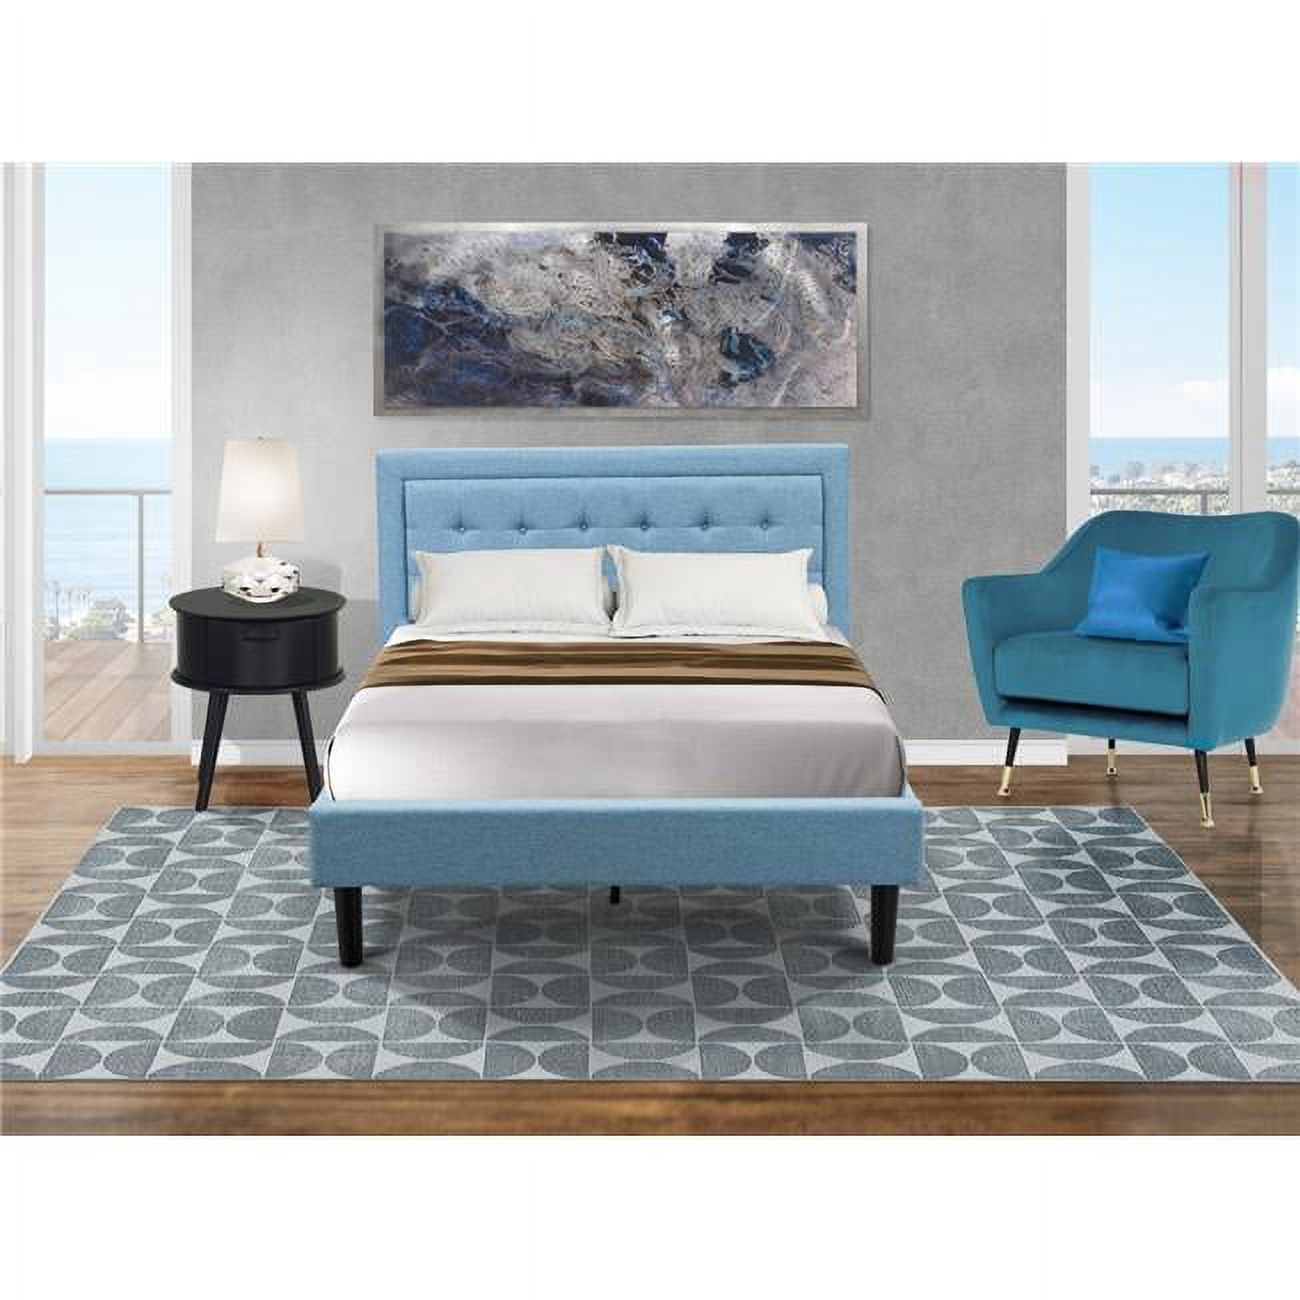 East West Furniture 2-piece Wood Platform Full Bedroom Set in Denim Blue/Navy - image 1 of 5